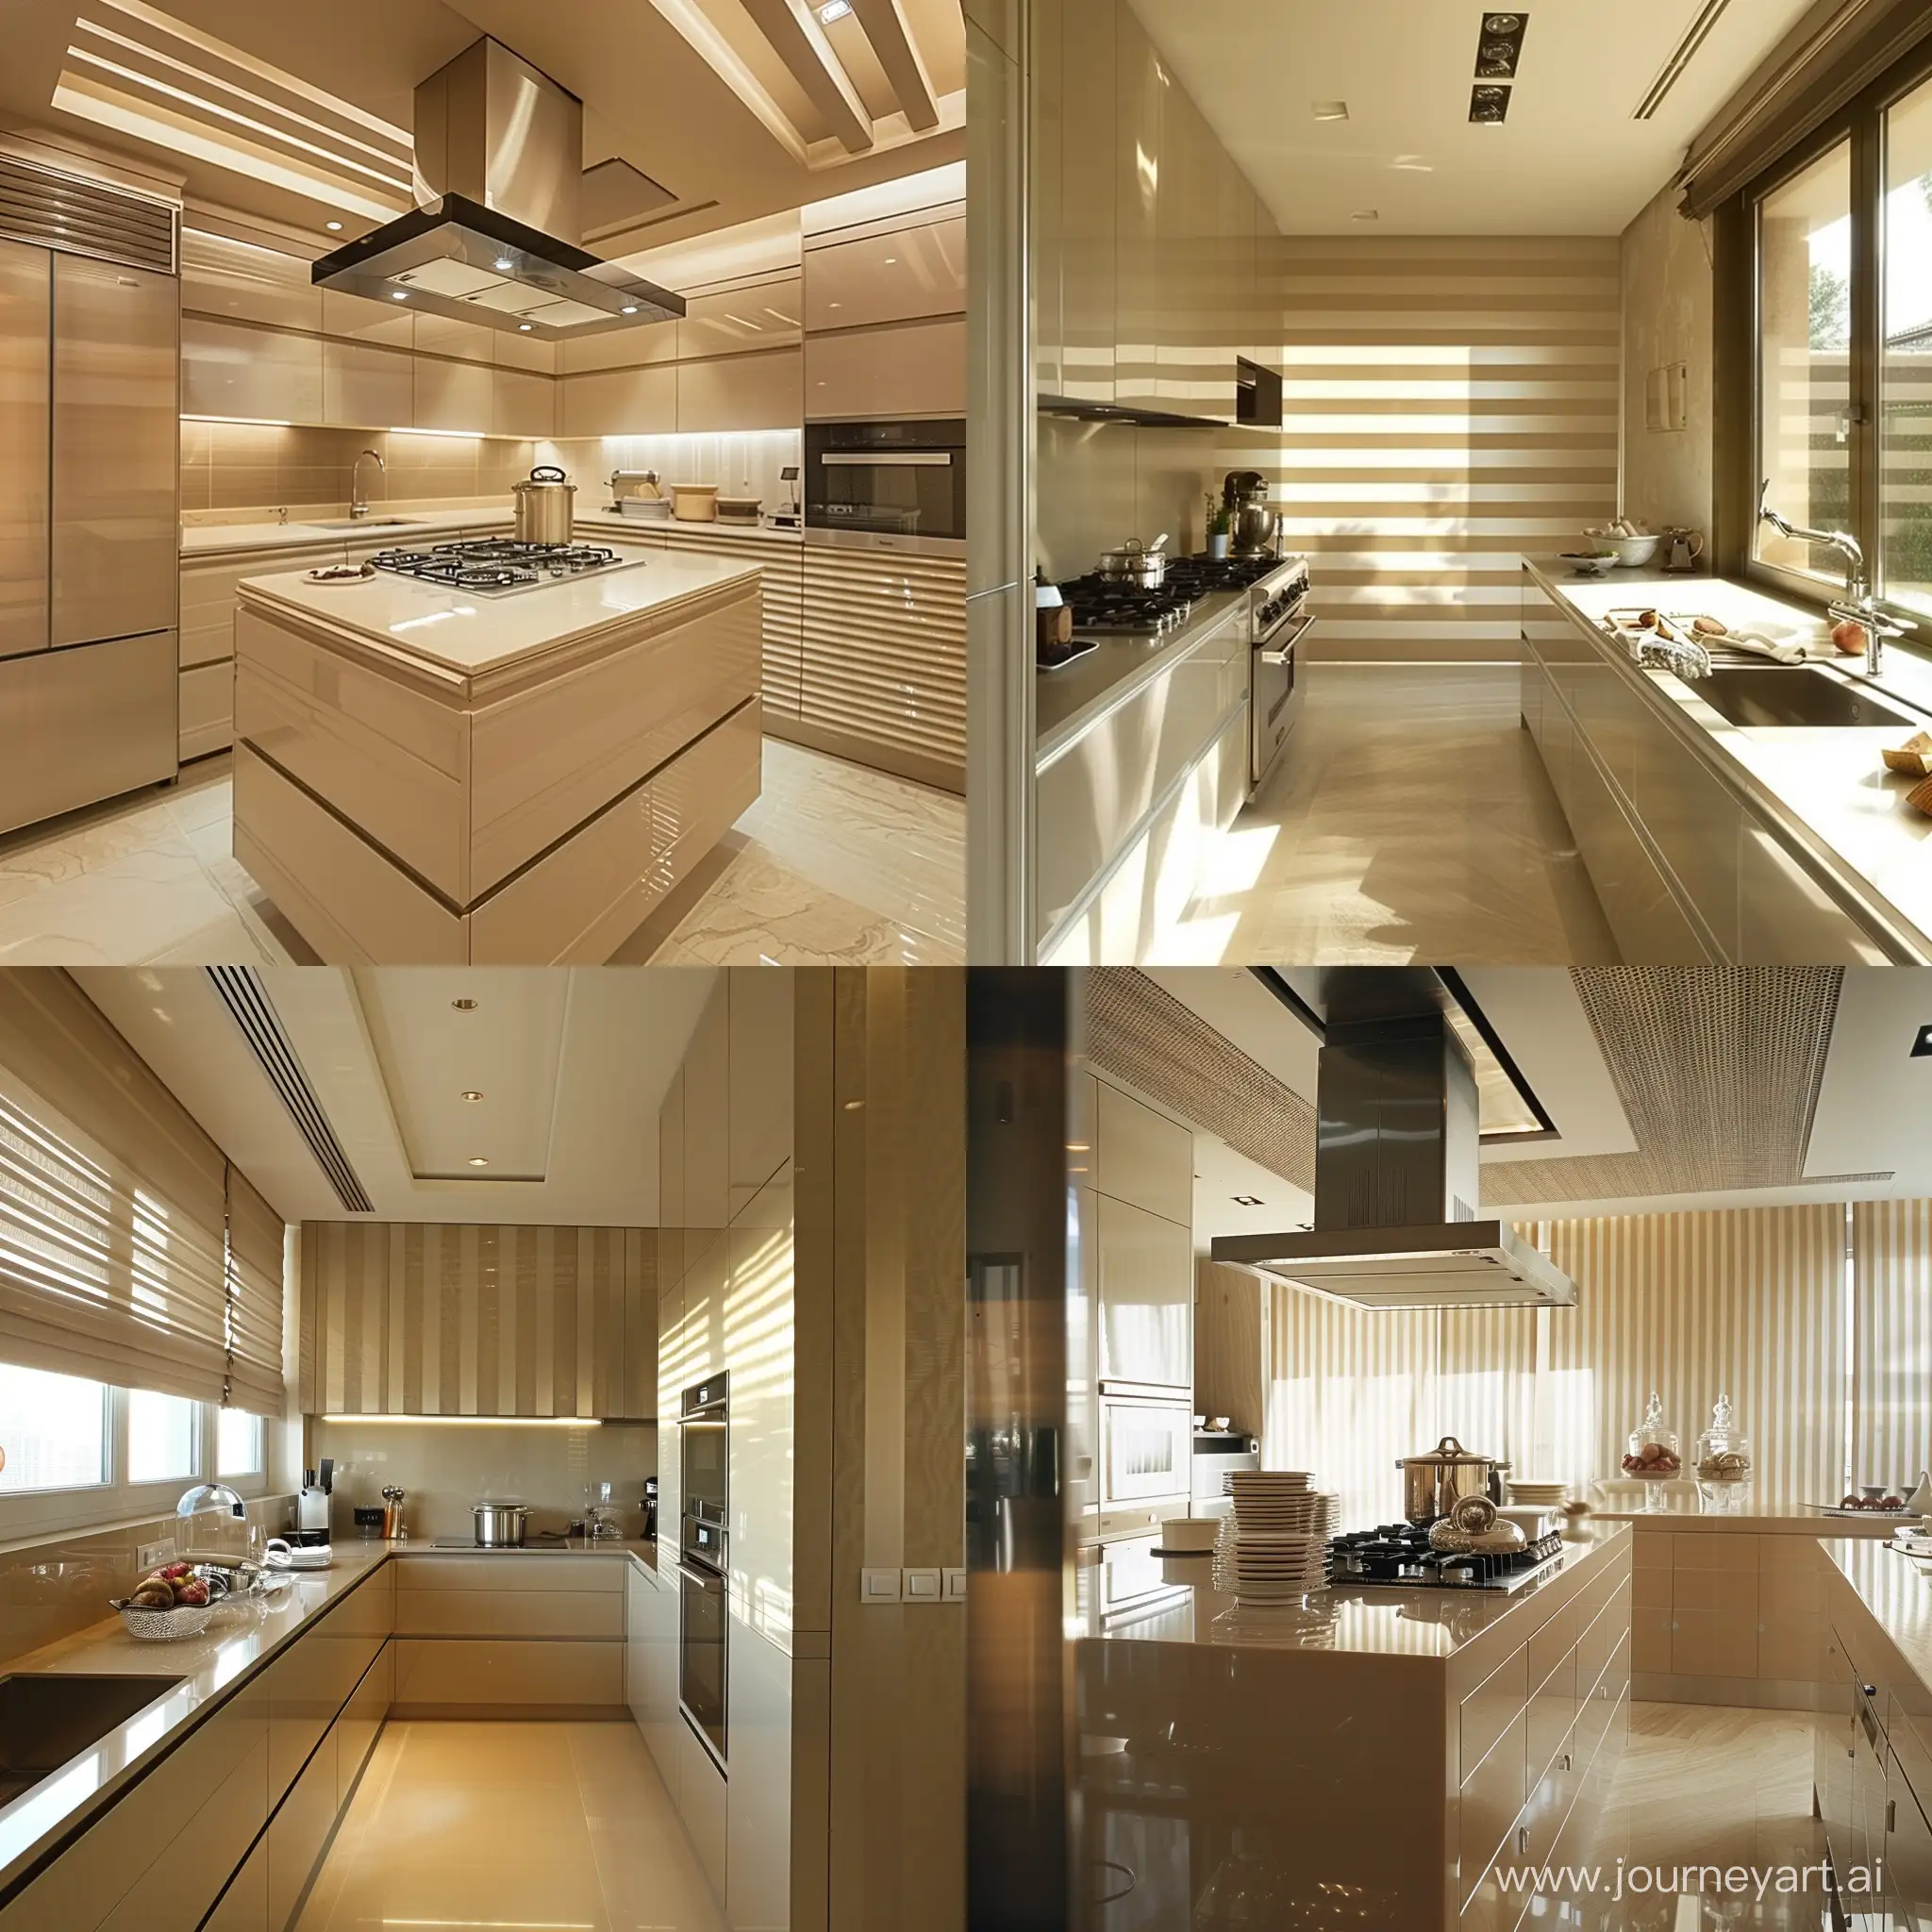 Modern-Beige-Kitchen-Interior-with-Striped-Accents